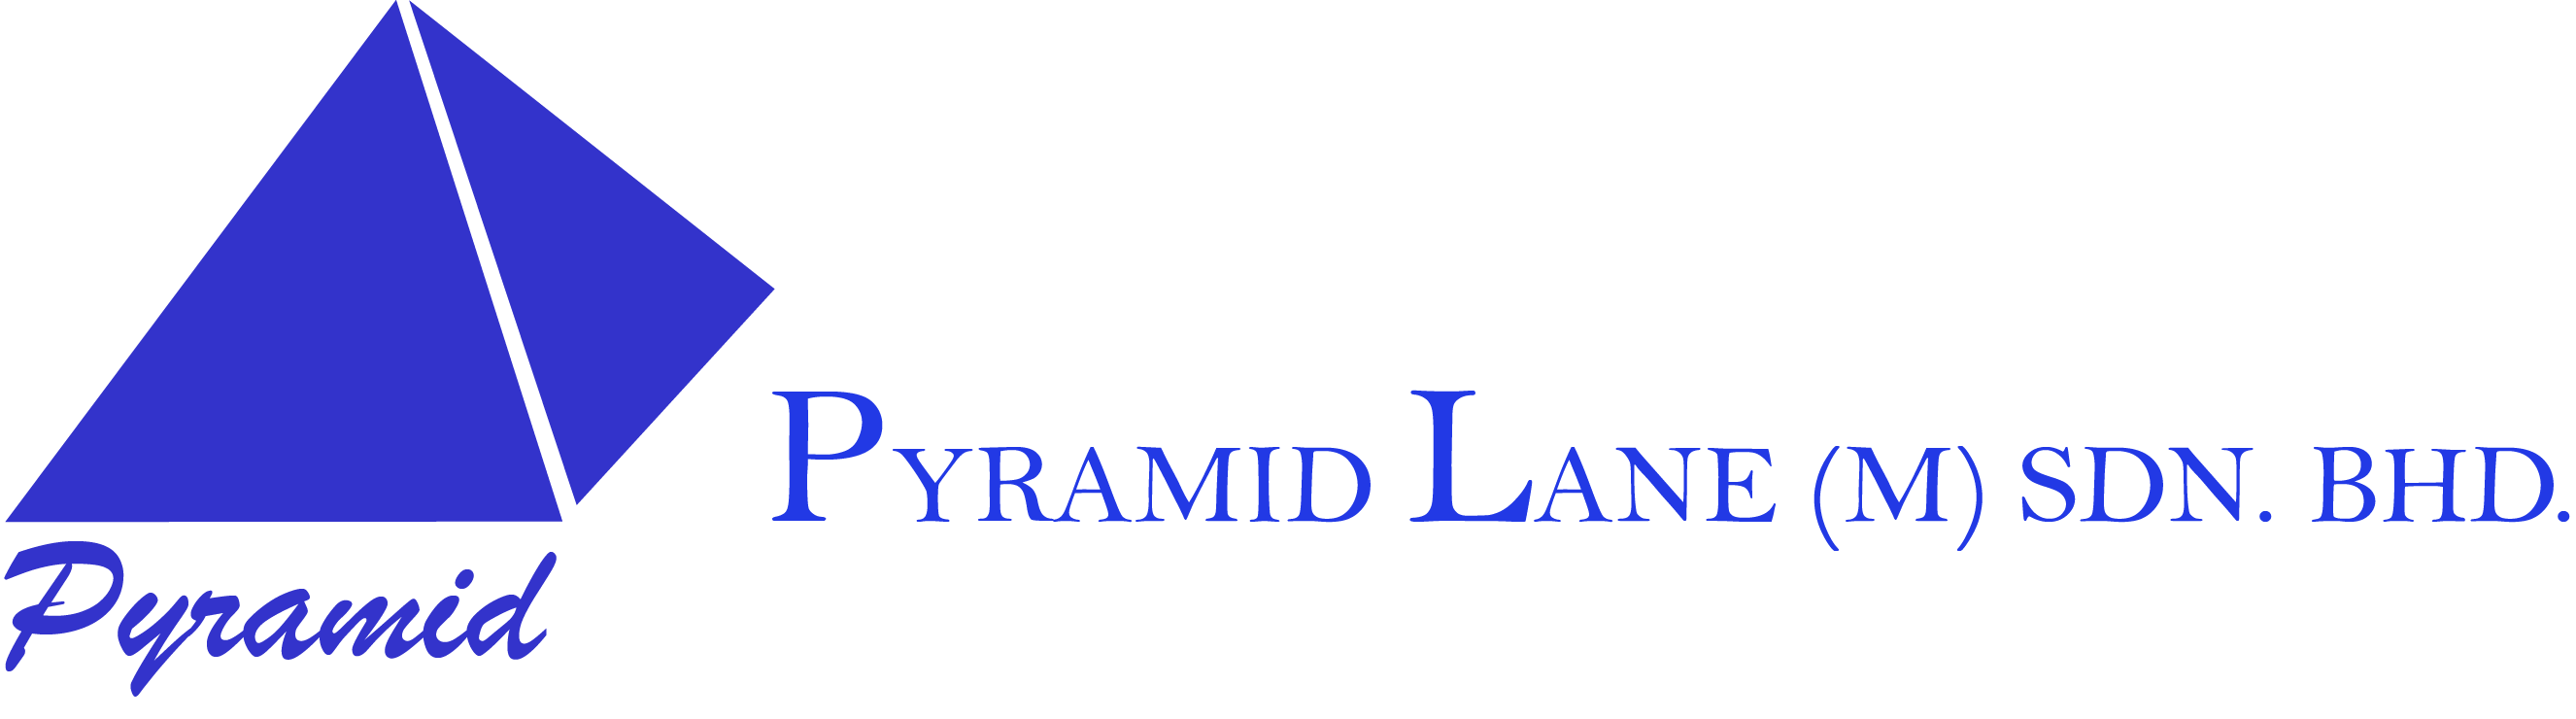 Pyramid-Lane-LOGO